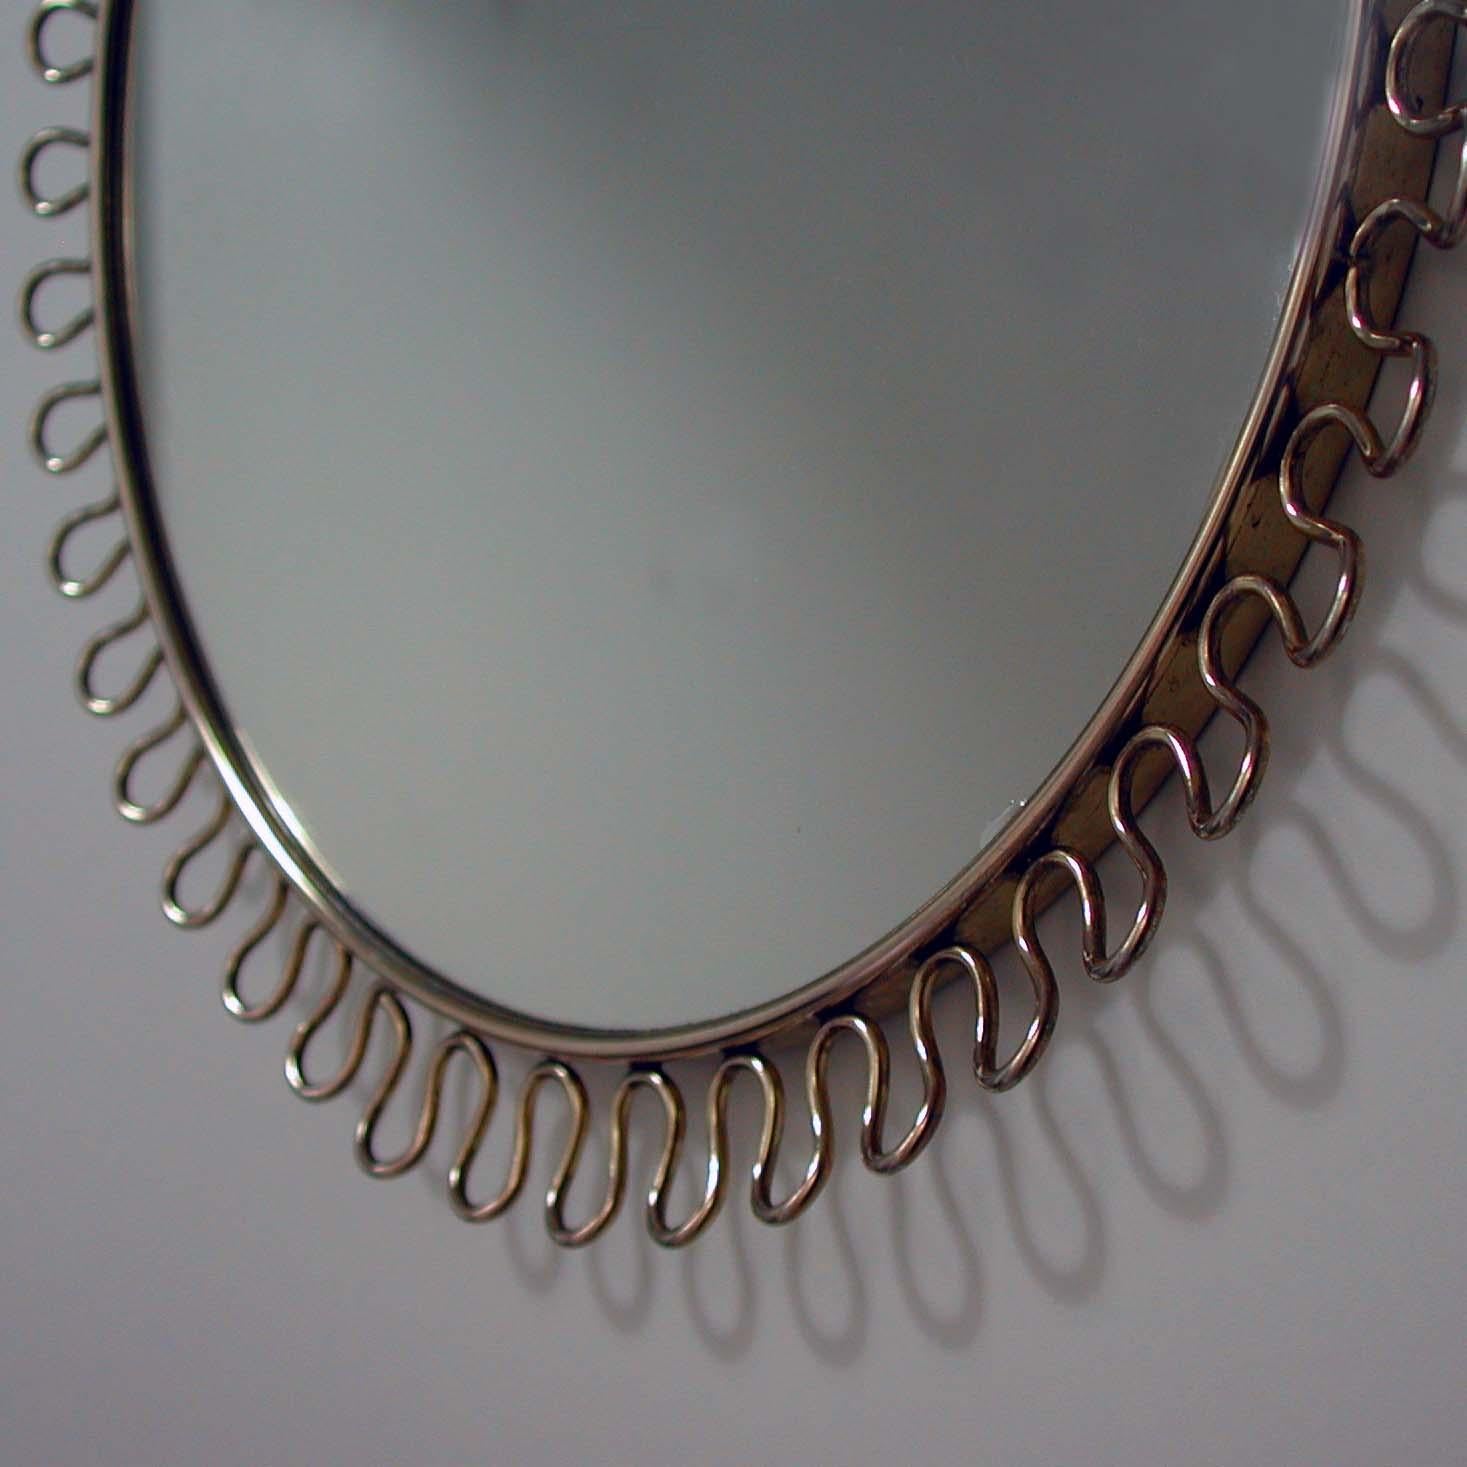 Mid-20th Century Petite Sculptural Brass Loop Mirror Attr. to Josef Frank for Svenskt Tenn, 1950s